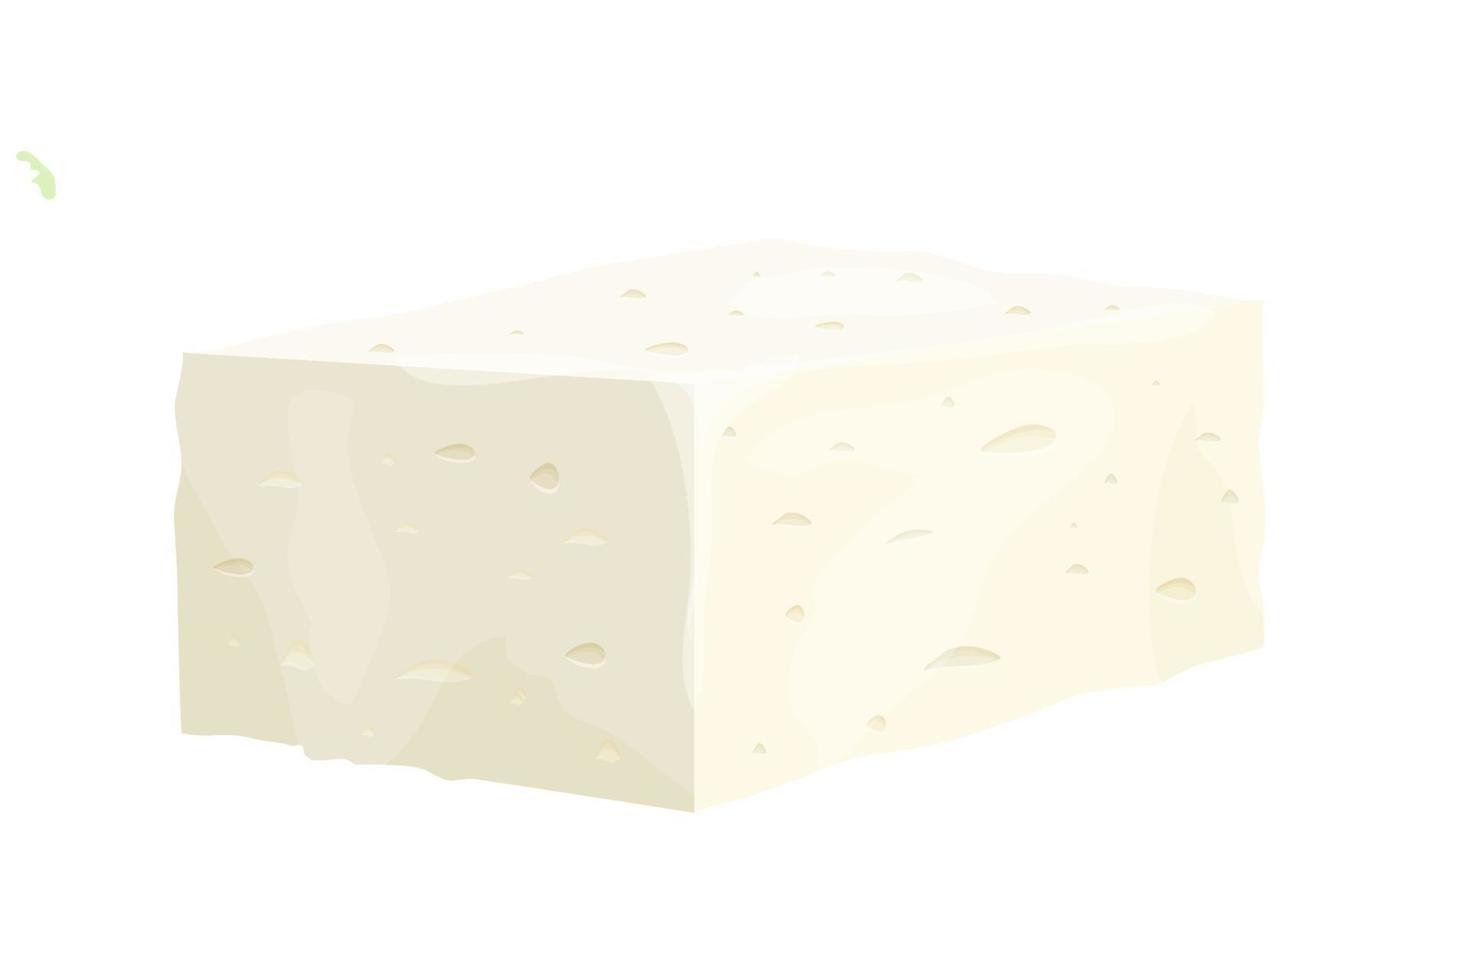 fetaostbit i tecknad stil detaljerad ingrediens isolerad på vit bakgrund. vit grekisk ostmassa gjord av skeppsmjölk eller mjölkböna. vektor illustration